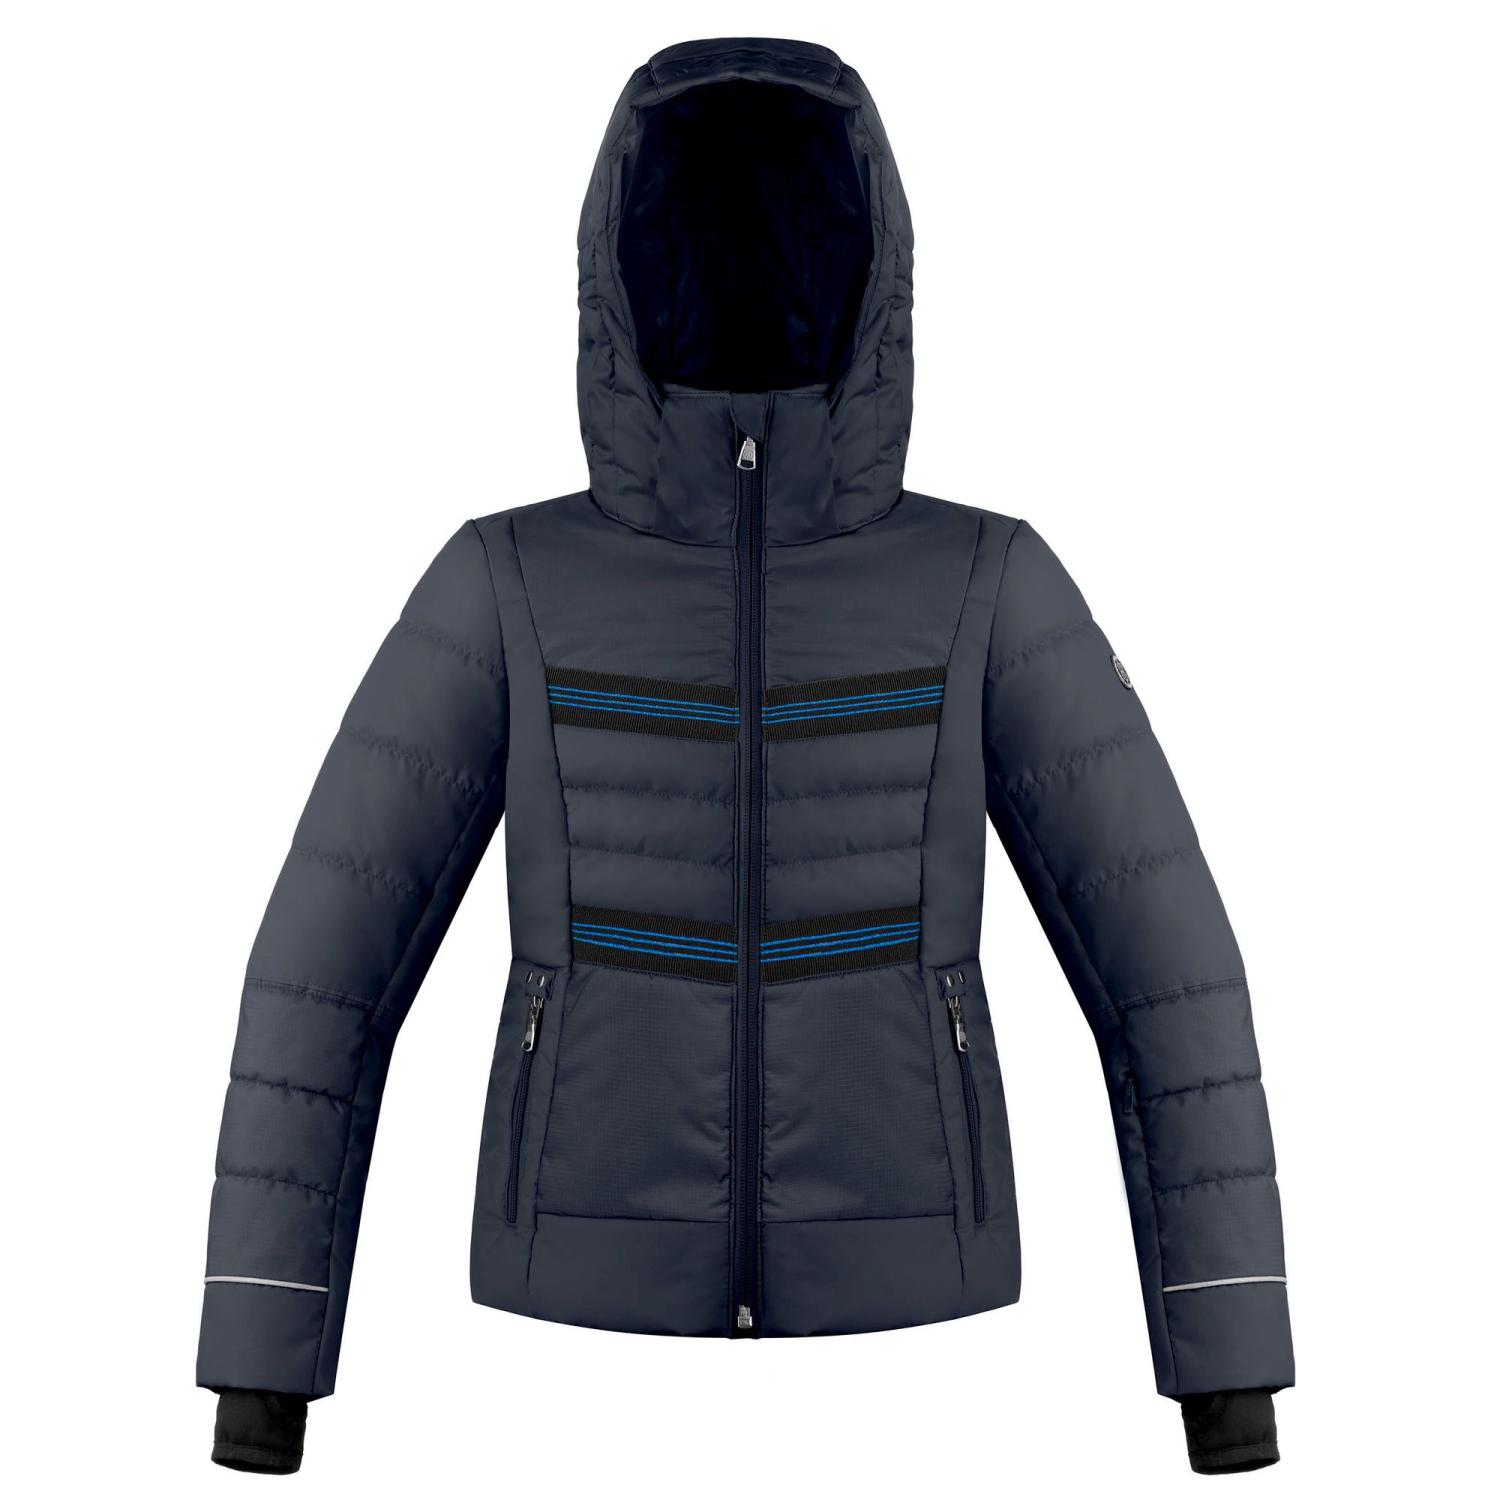 Куртка горнолыжная Poivre Blanc 20-21 Ski Jacket Jr Gothic Blue куртка горнолыжная head 20 21 rebels sun jacket w whan